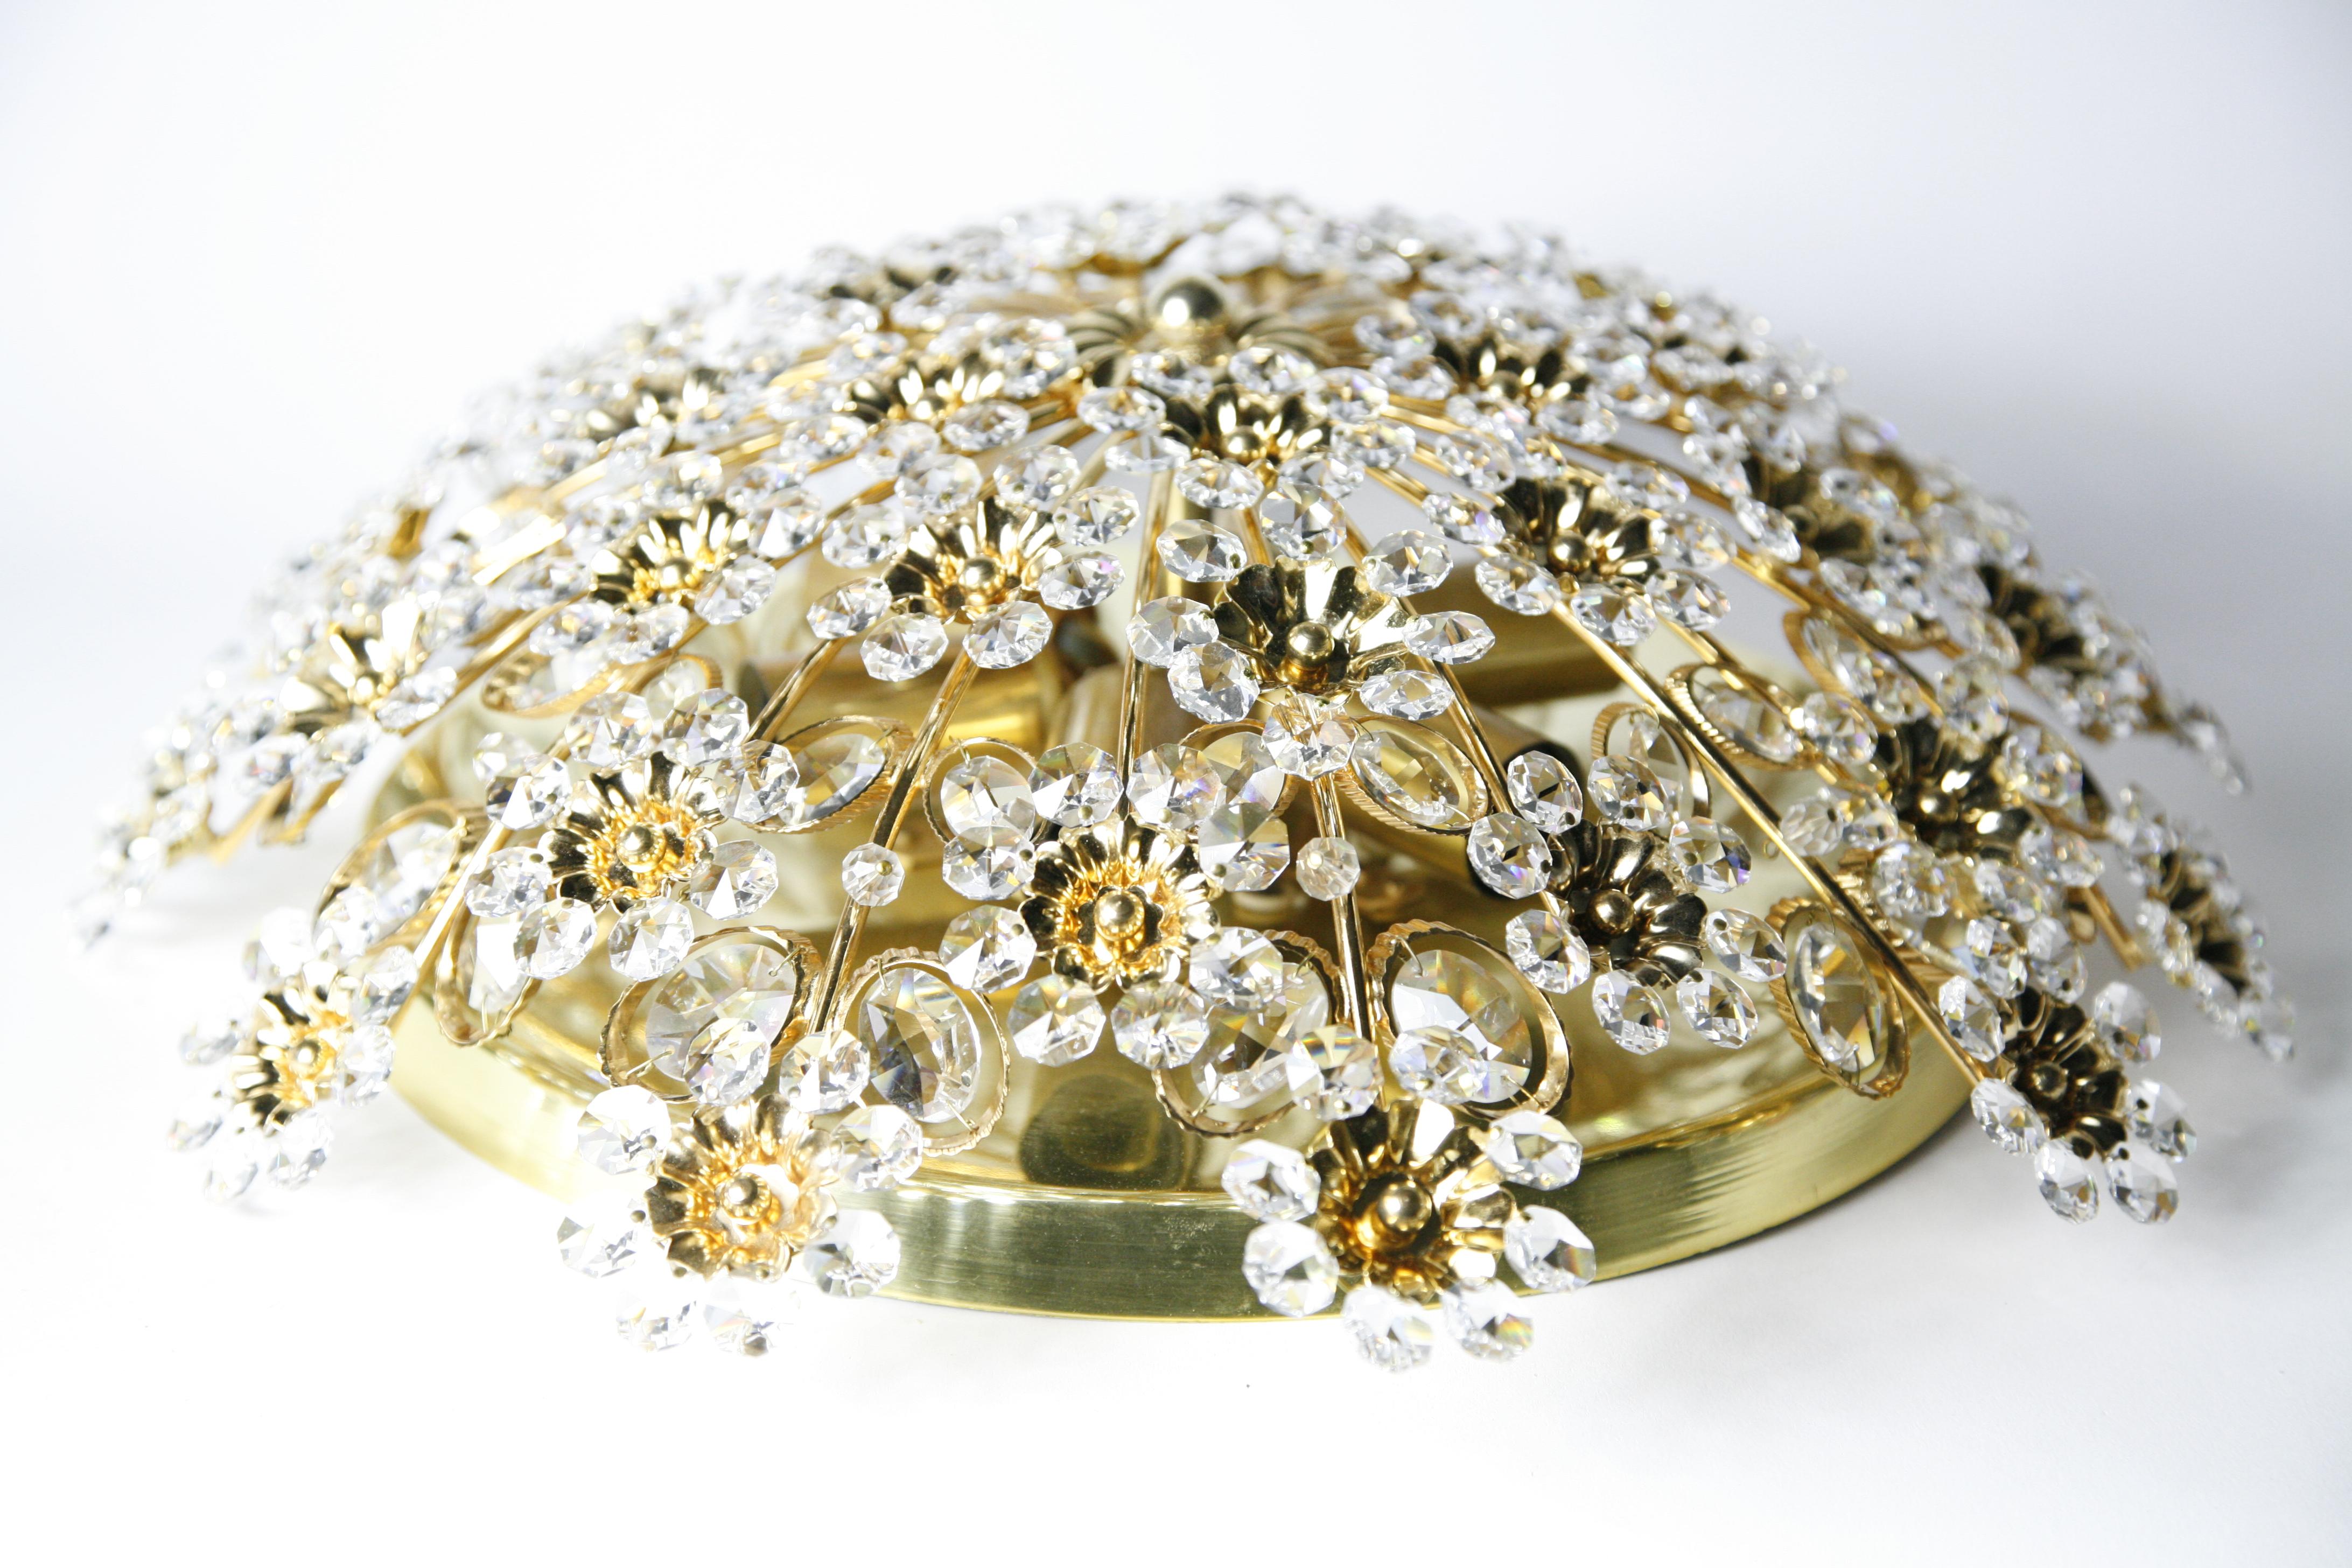 Encastré rond des années 1970  cadre doré qui comporte de nombreux cristaux taillés et des perles de différentes tailles placés en forme de fleurs, Autriche.
Six douilles européennes de type candélabre.

Signé et numéroté Christoph Palme, Palwa.